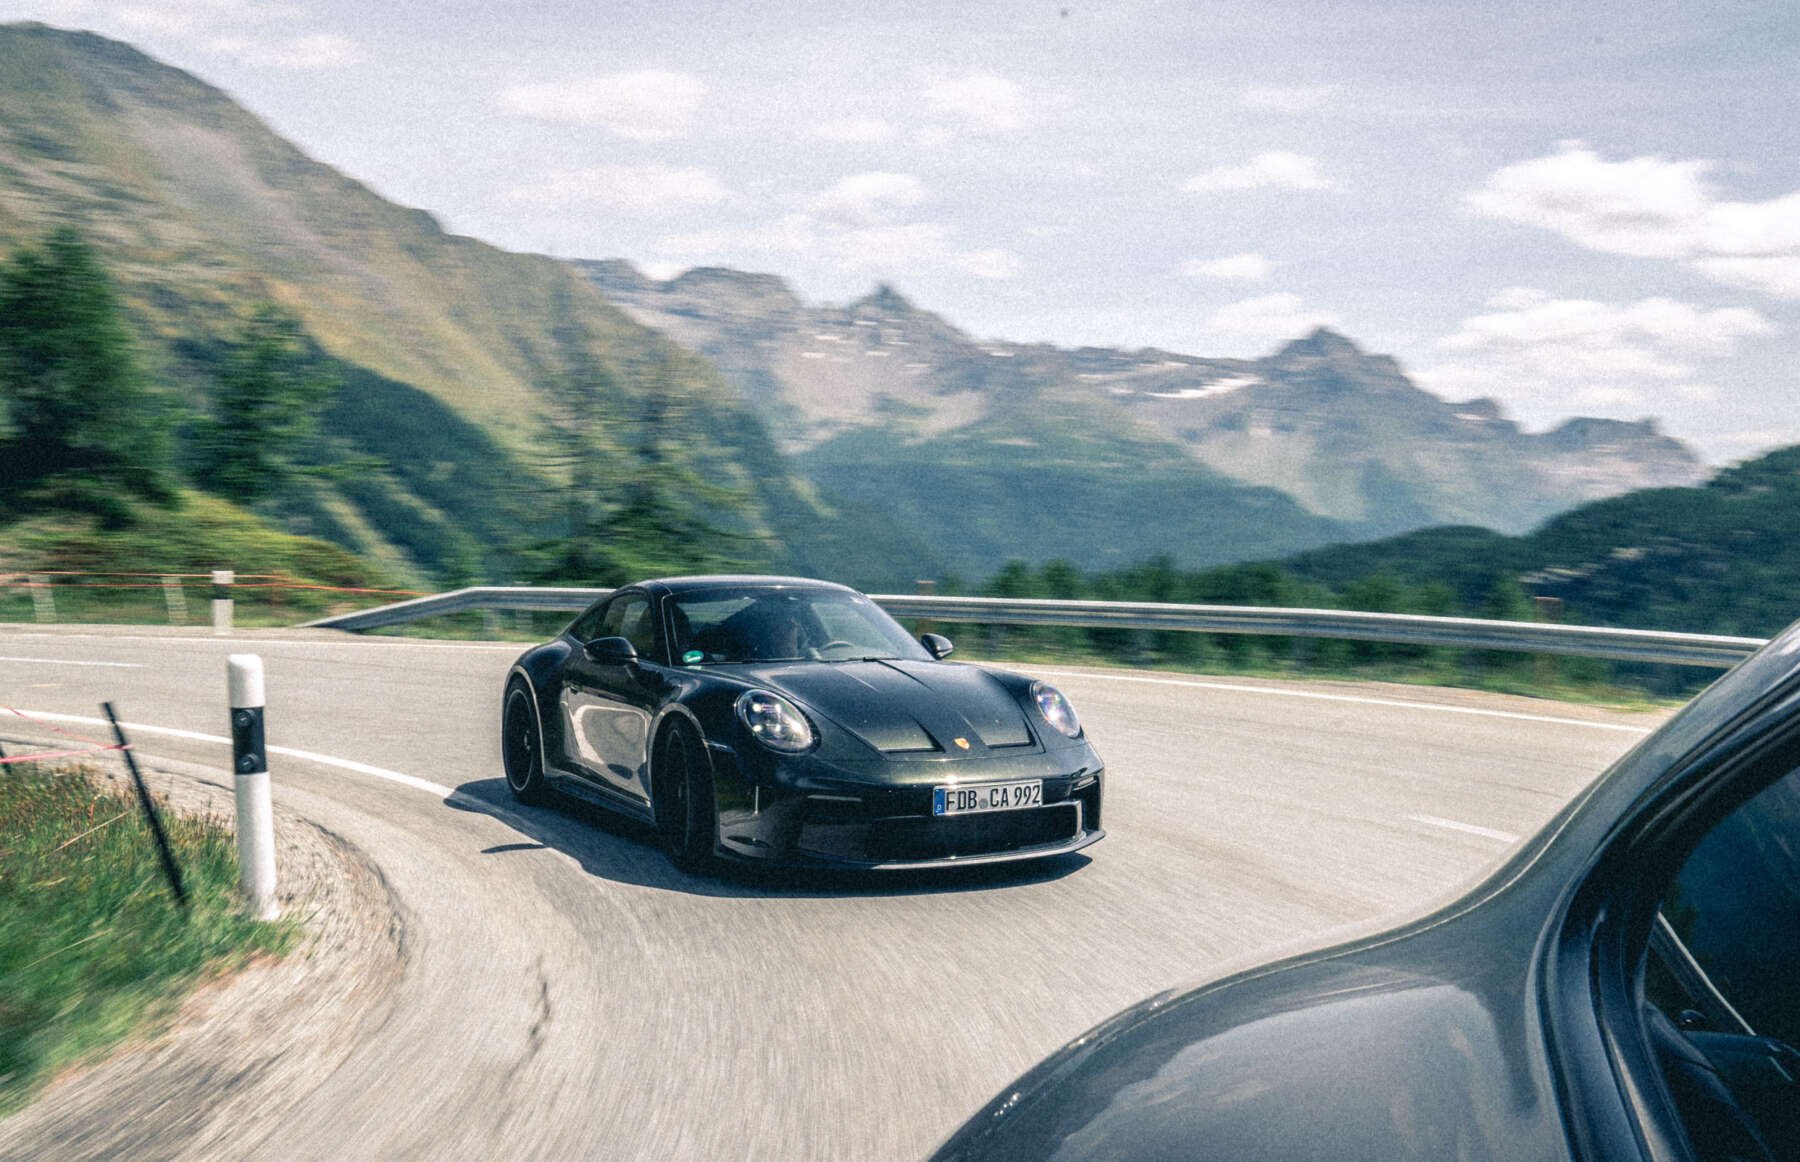 Sickalps – Porschefahrern die Berge zeigen